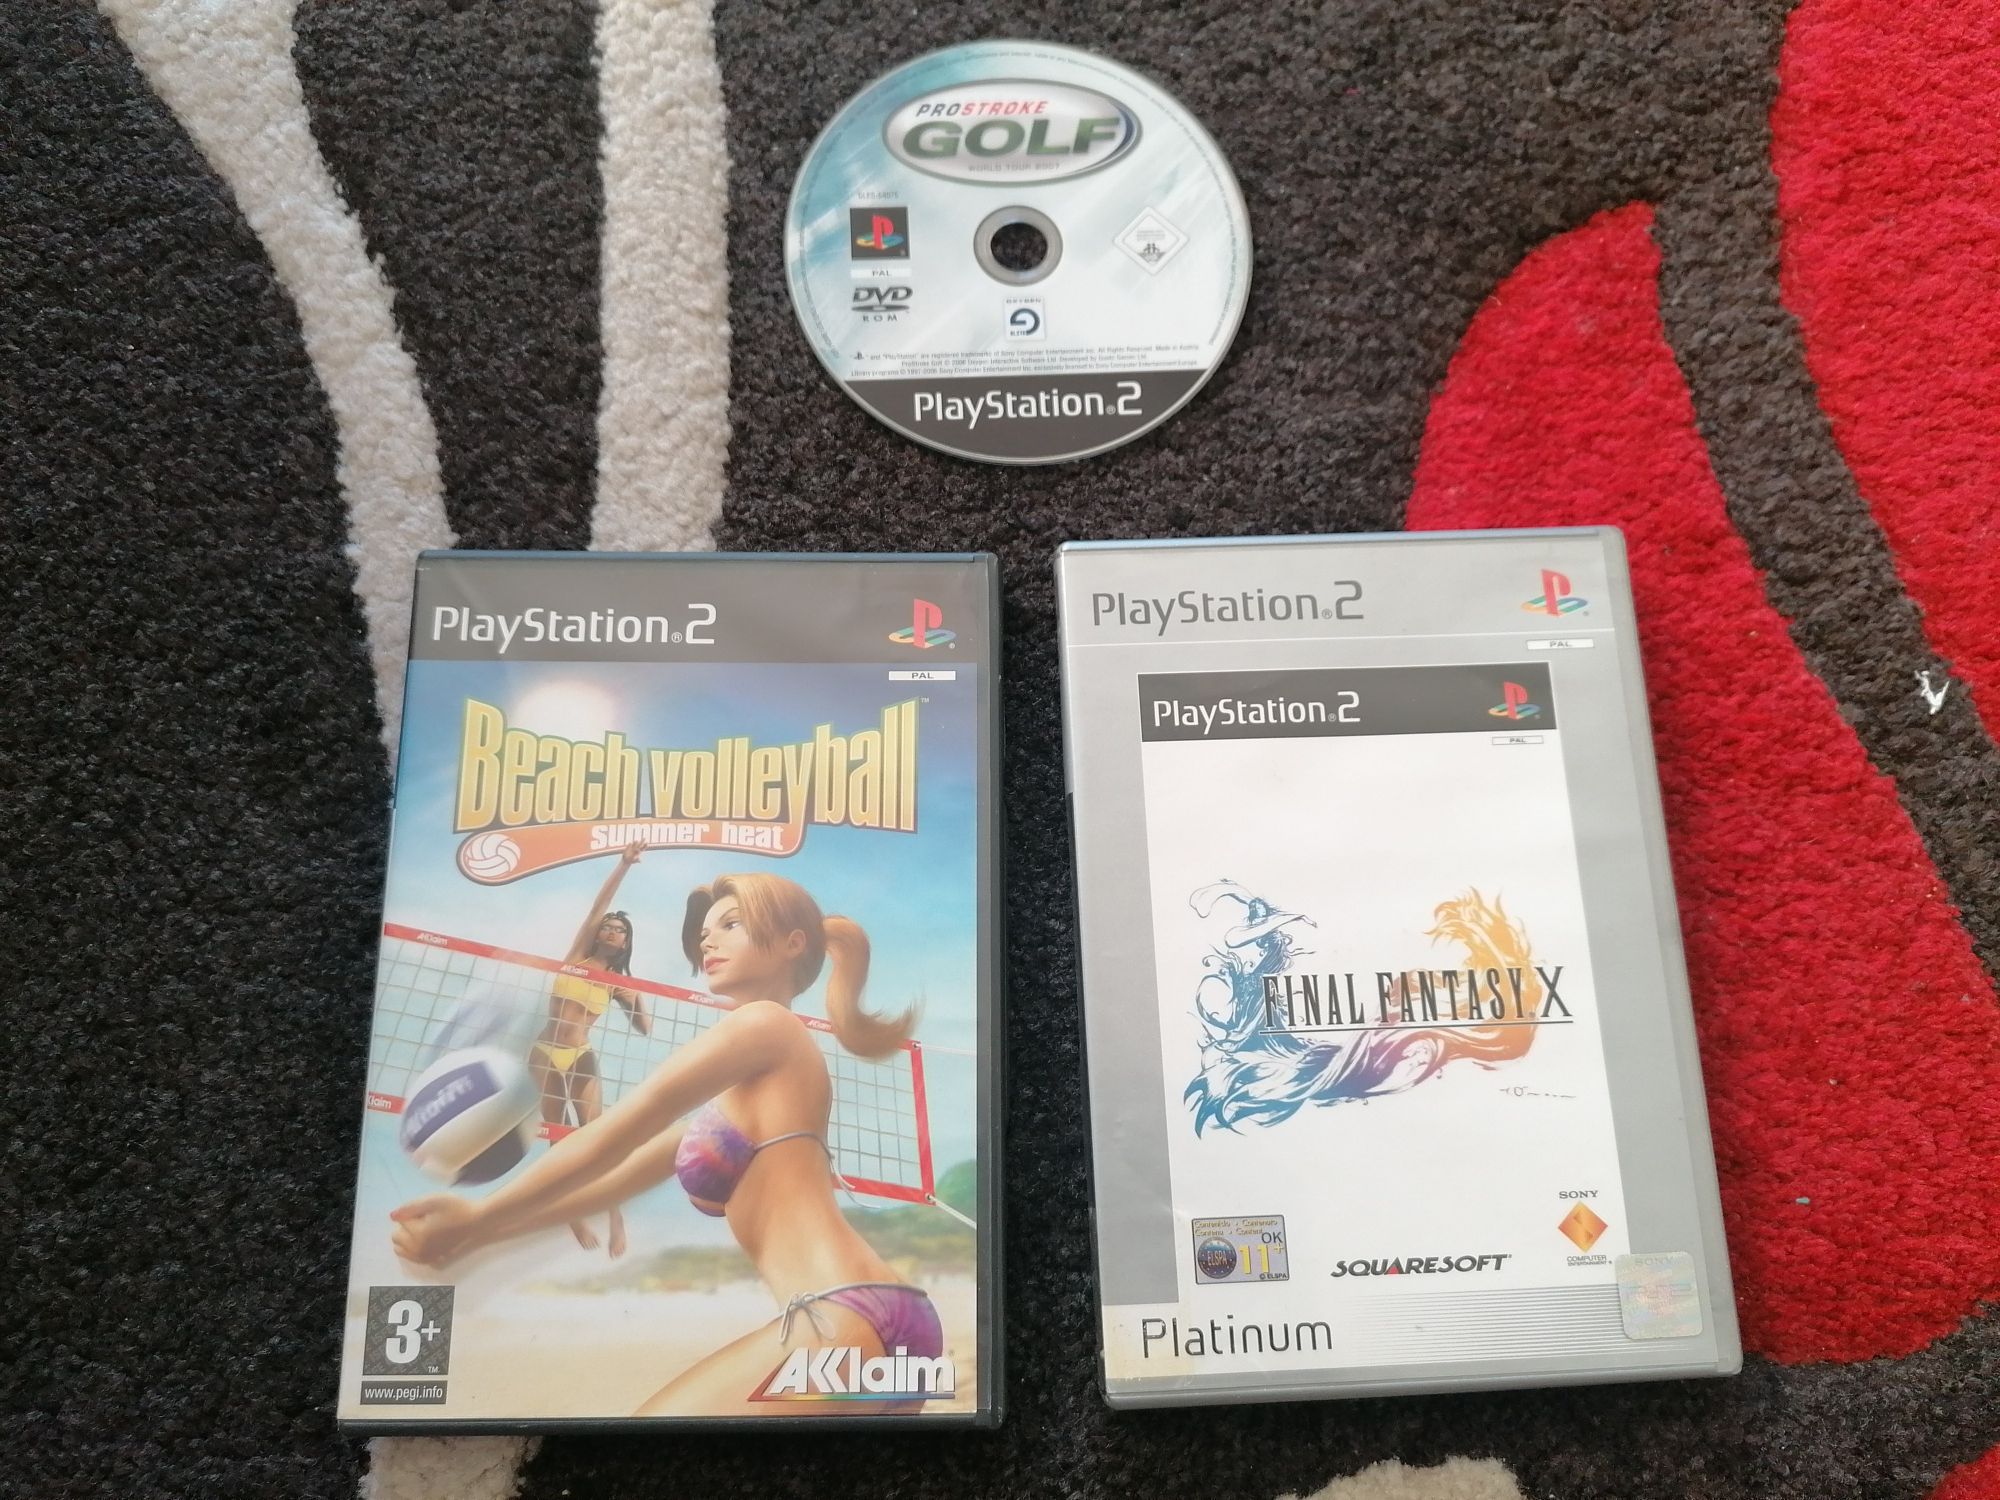 Vários jogos para PS2